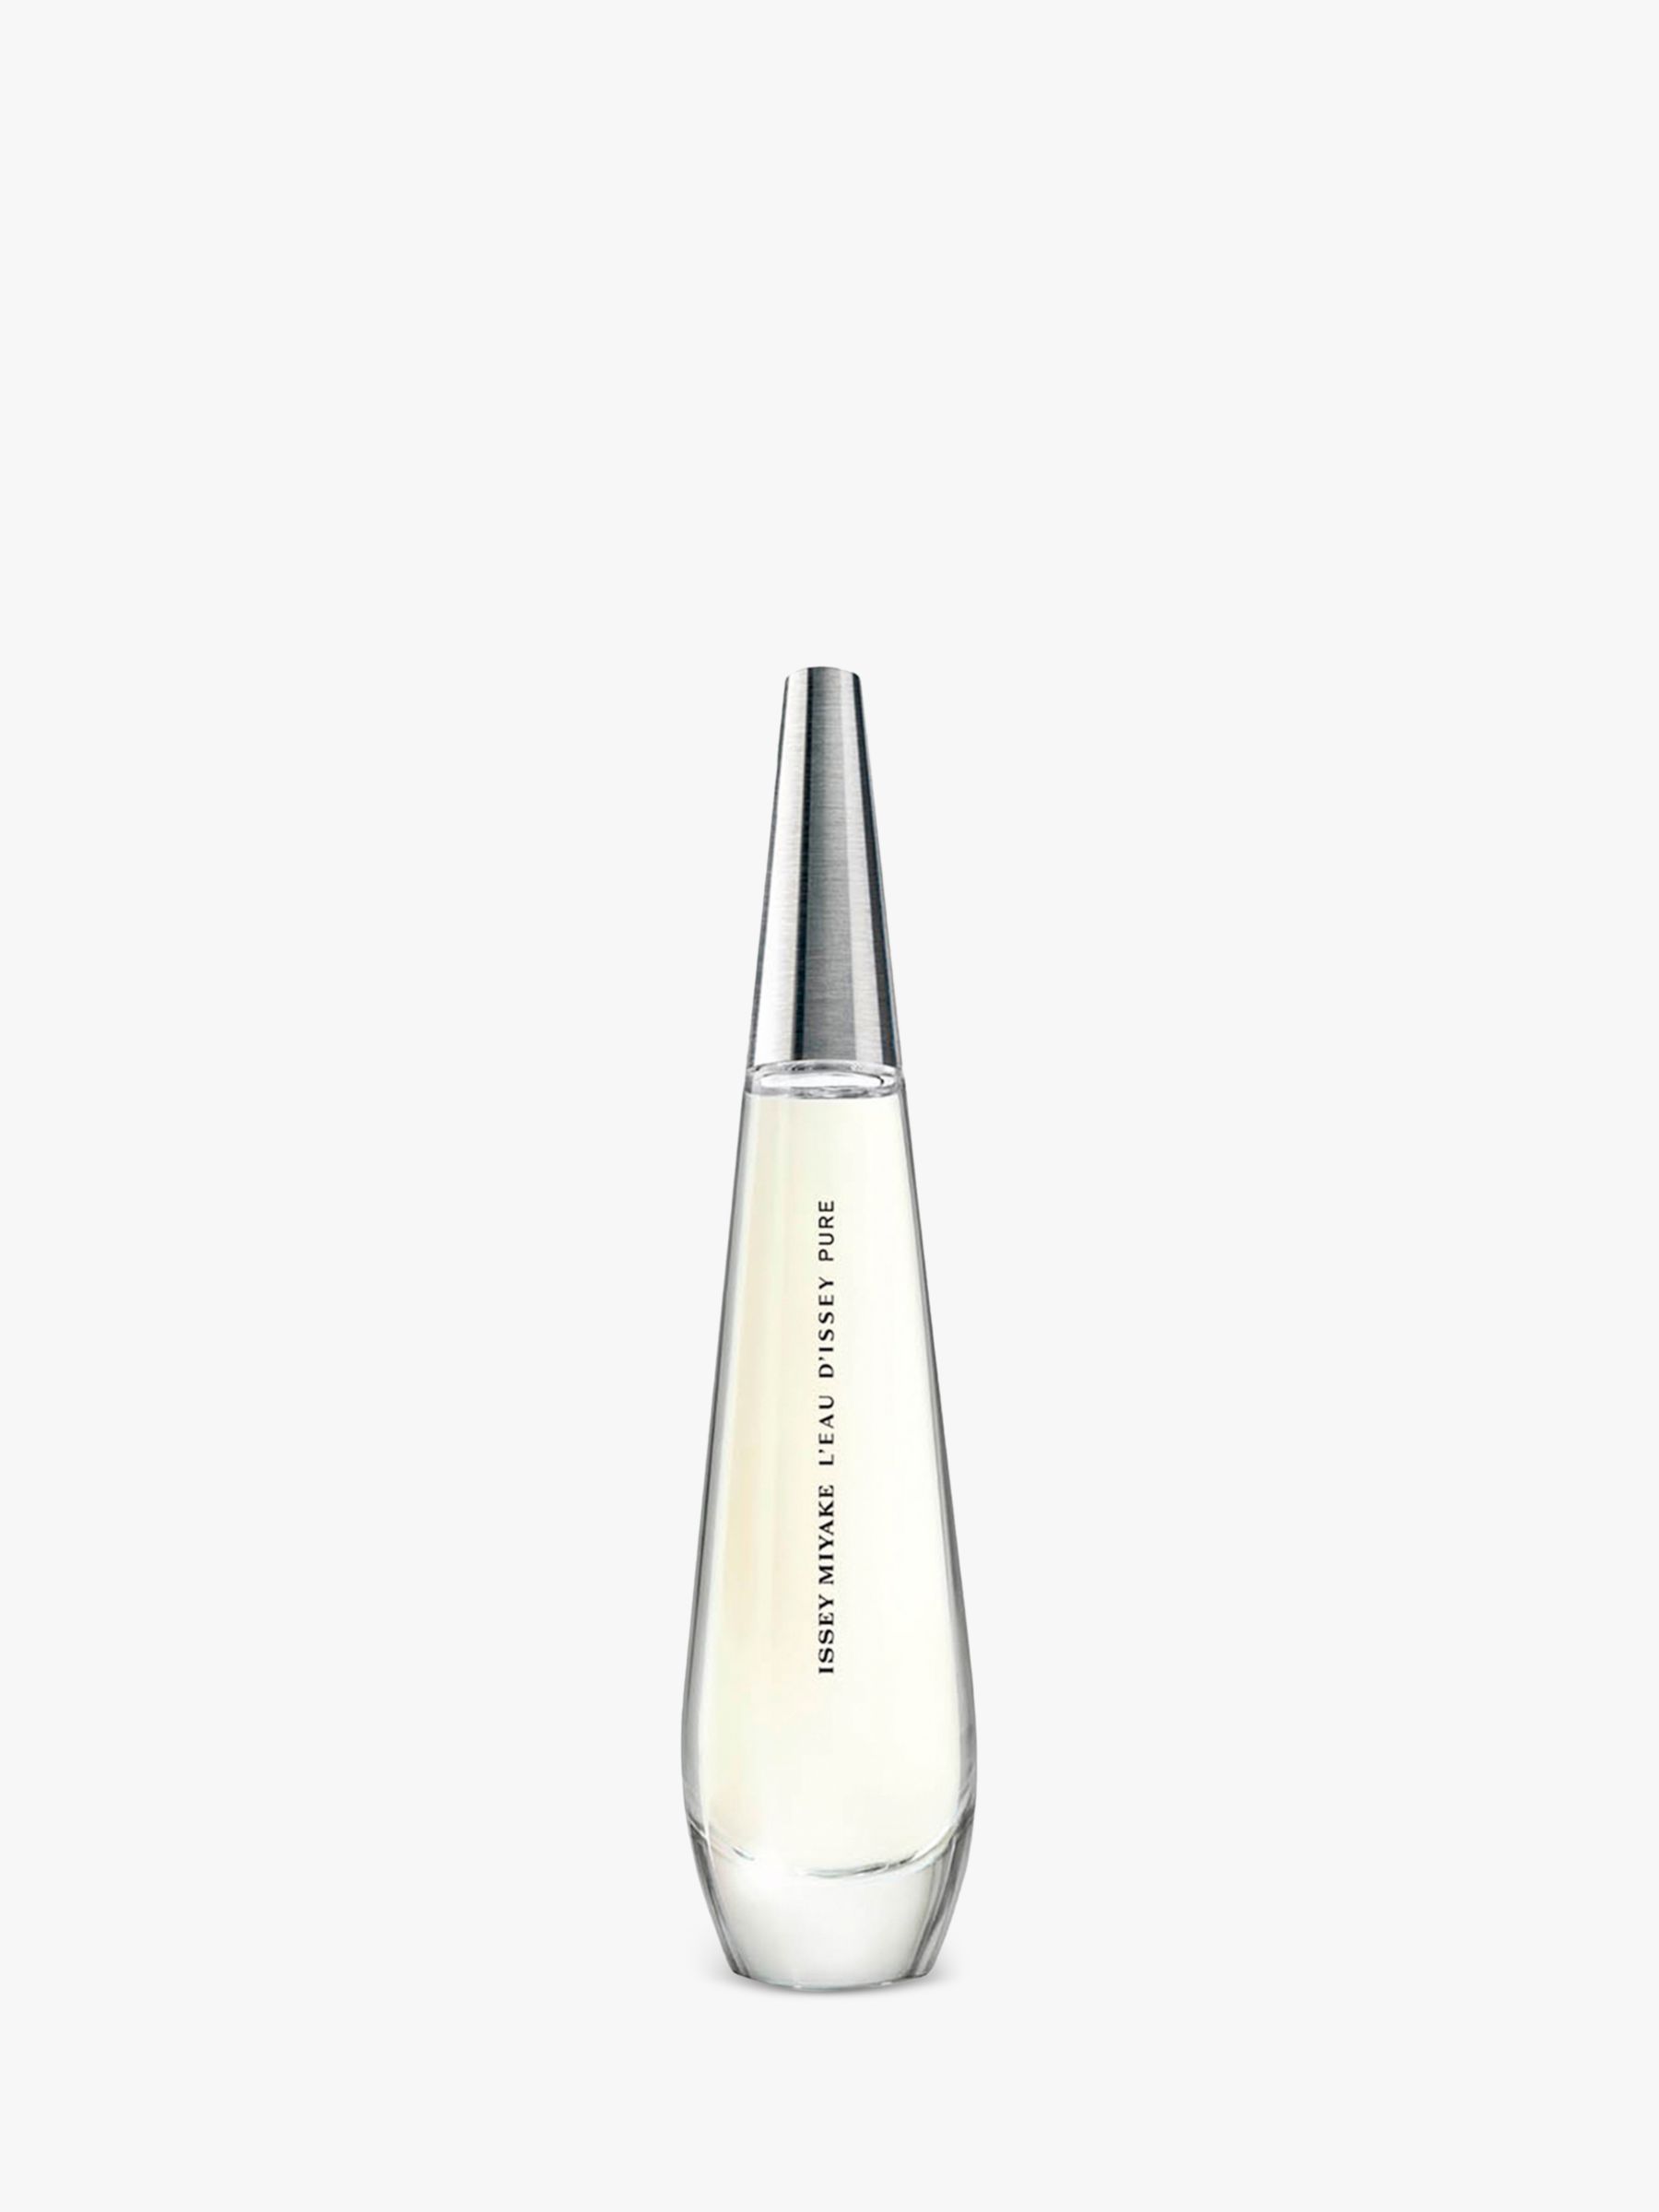 Issey Miyake L'Eau d'Issey Pure Eau de Parfum at John Lewis & Partners